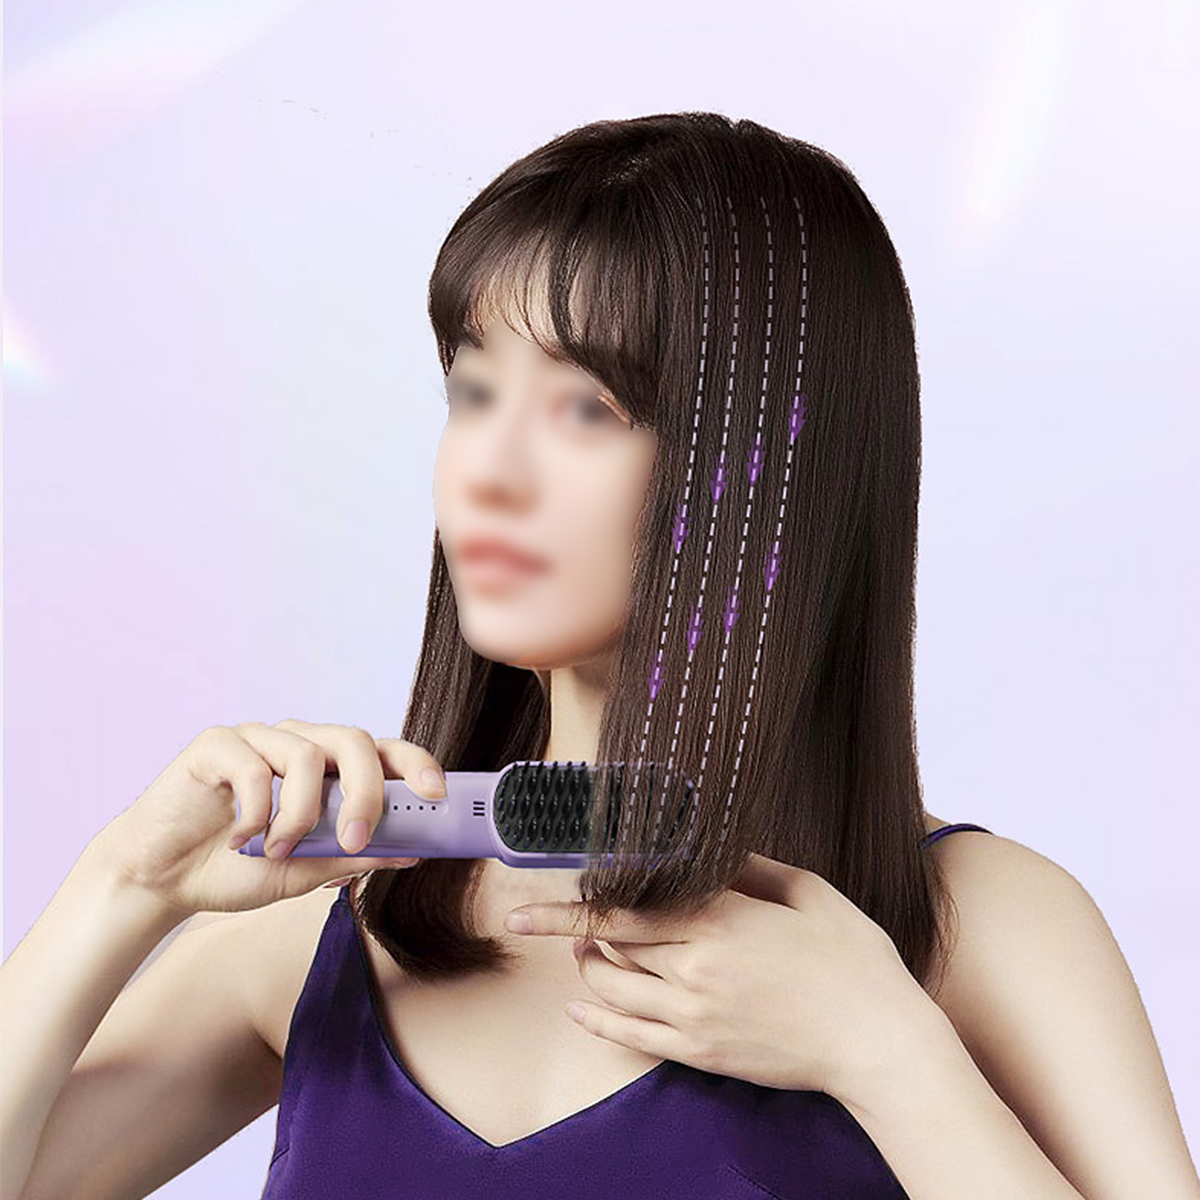 BRIGHTAKE Drahtloses Glätteisen Mini 3 Haarglättungskamm, Kamm Anion Haarglätter | Temperaturstufen